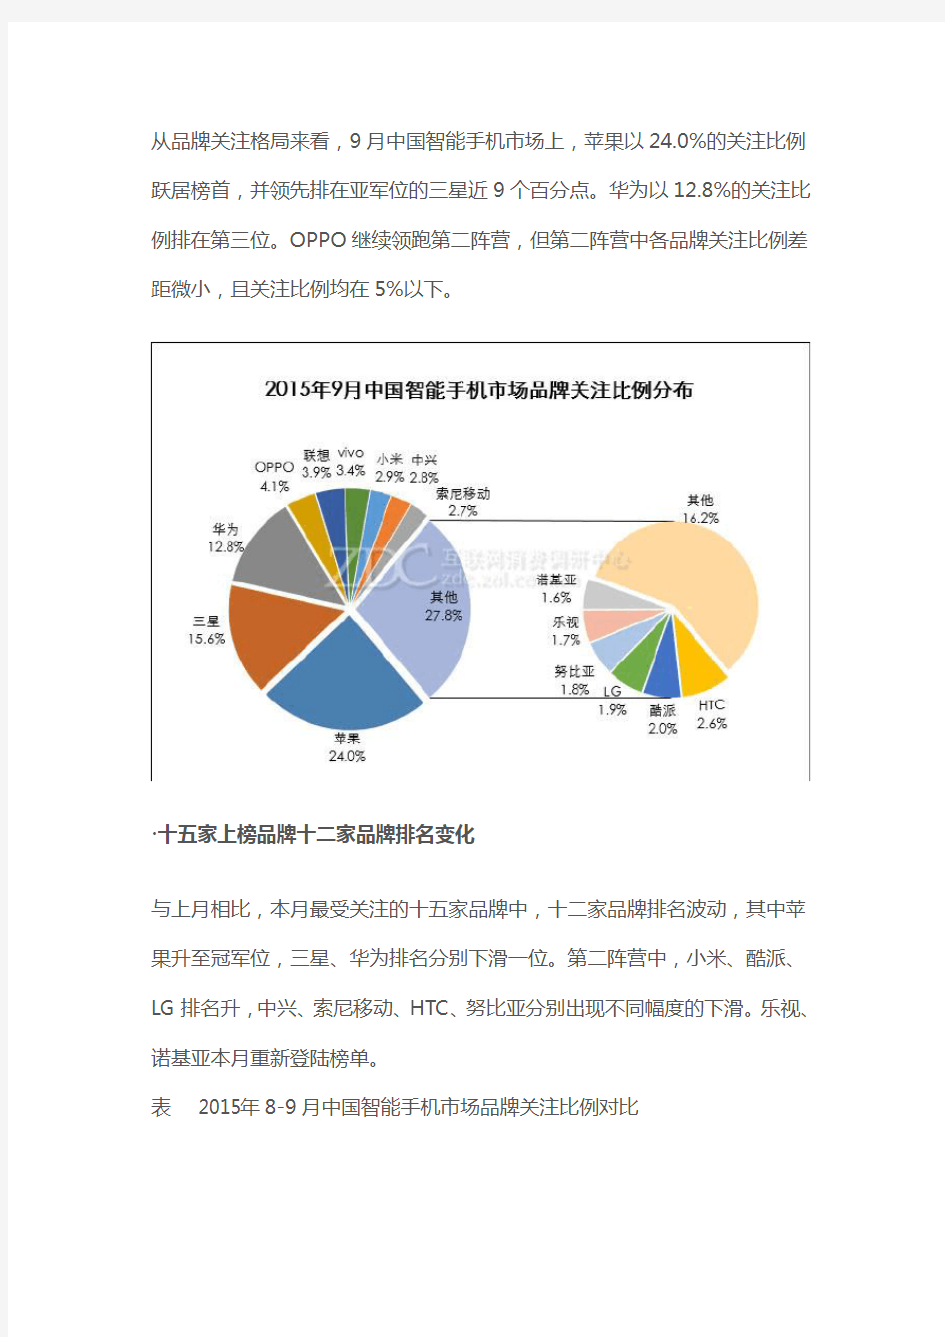 中国智能手机市场分析报告